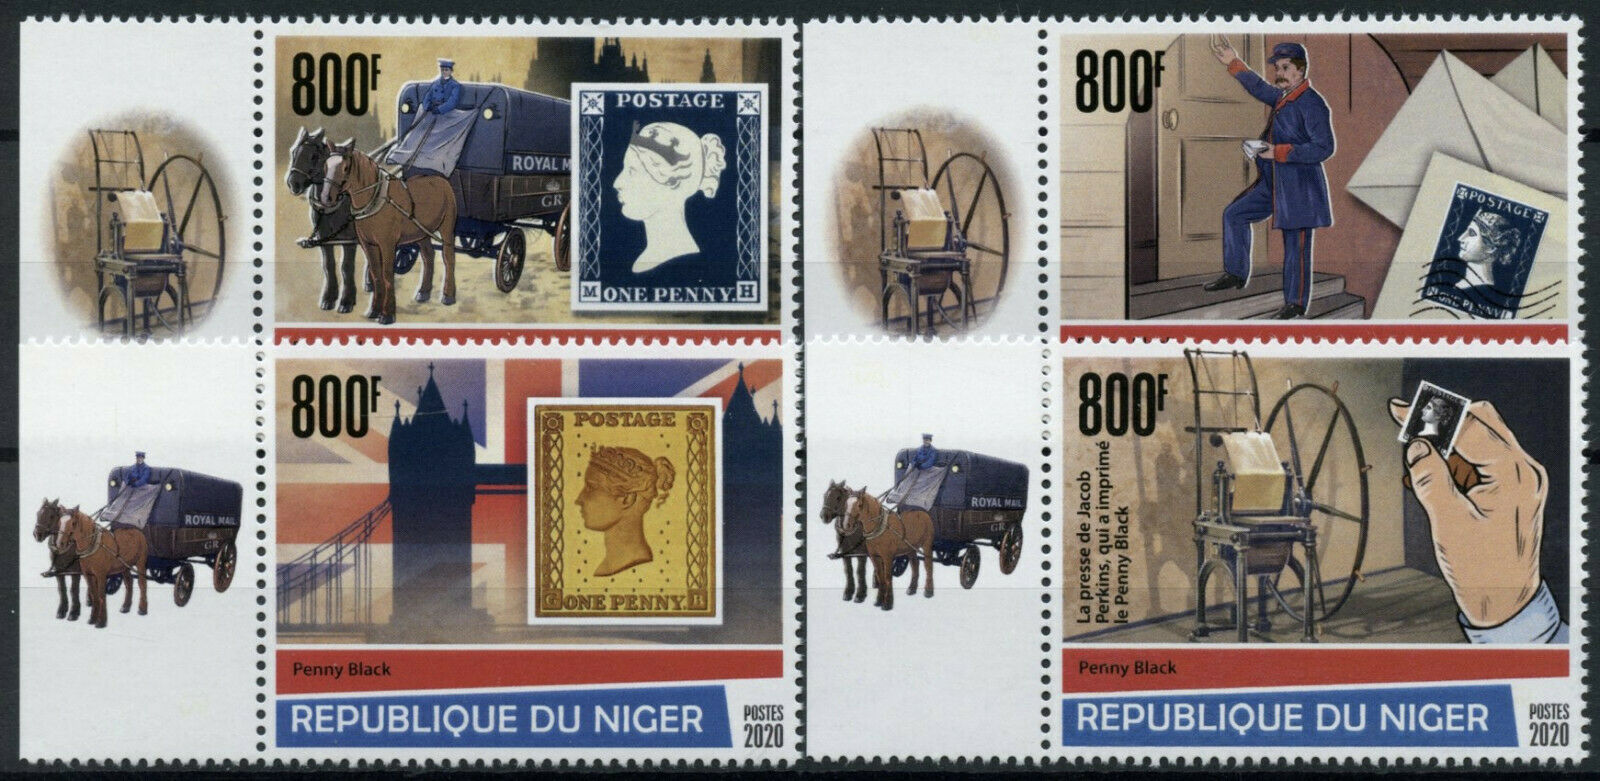 Niger 2020 MNH Penny Black Stamps Stamps-on-Stamps SOS 4v Set